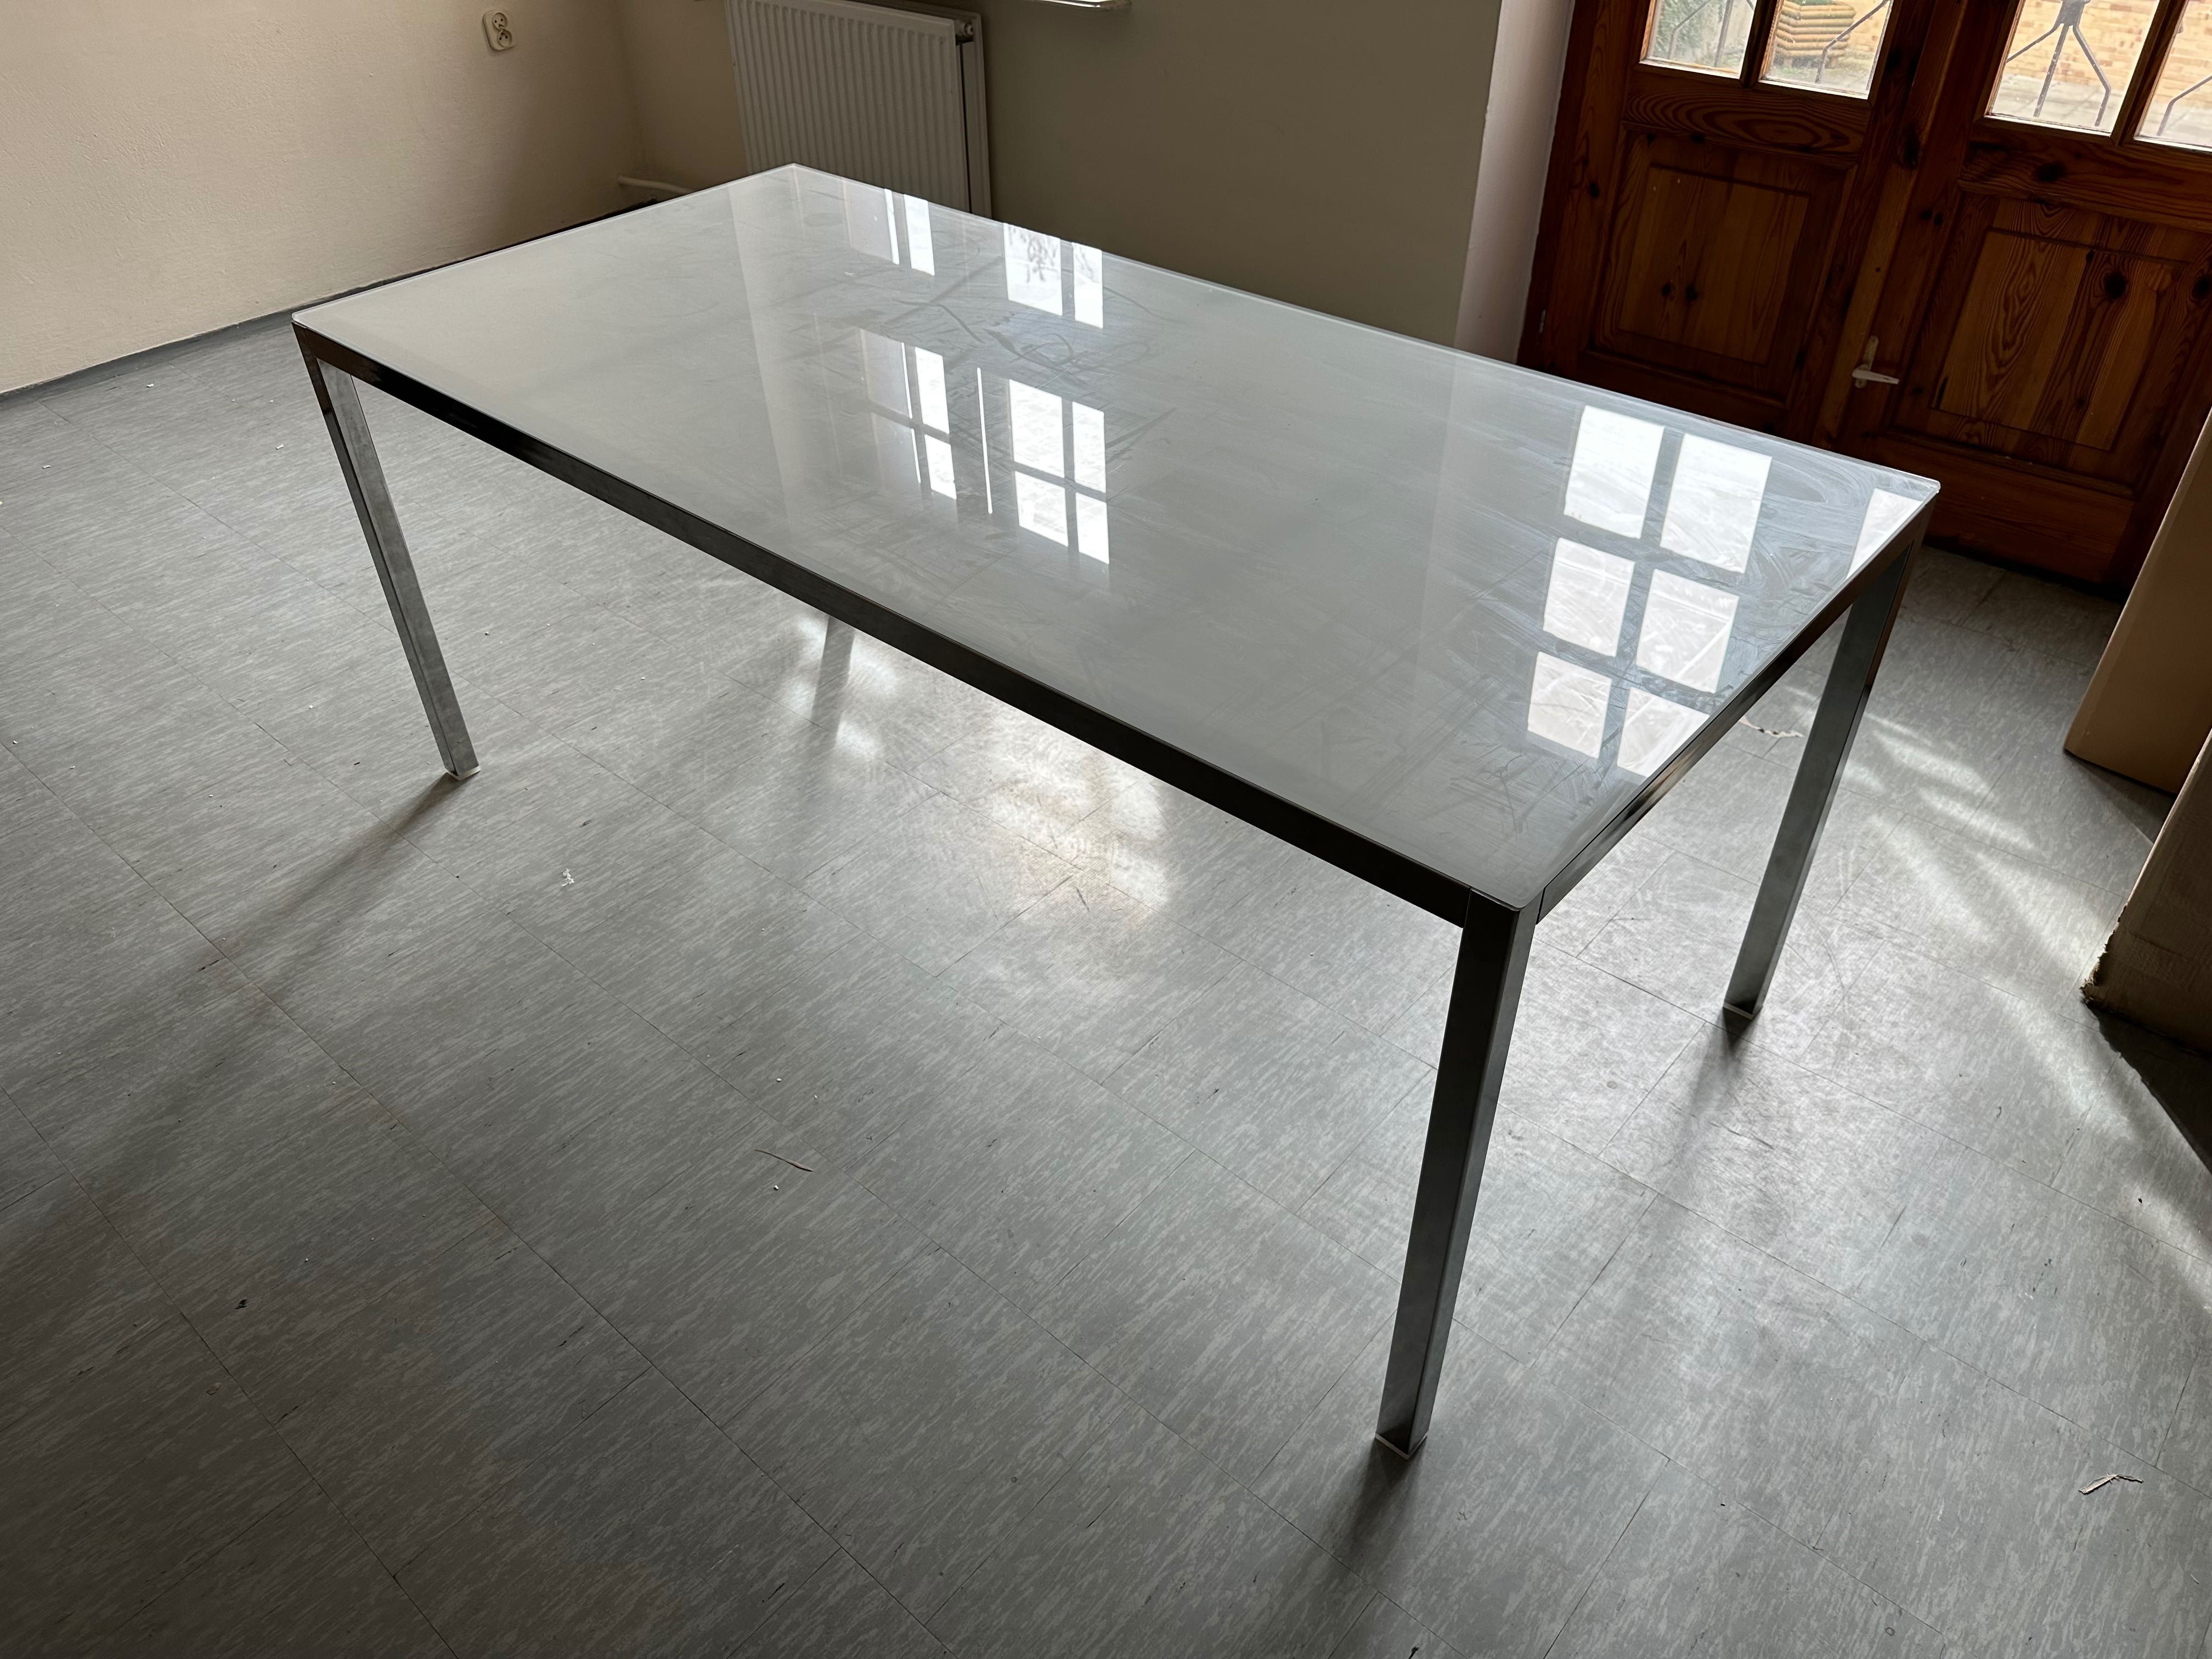 Stół TORSBY 180x85cm IKEA